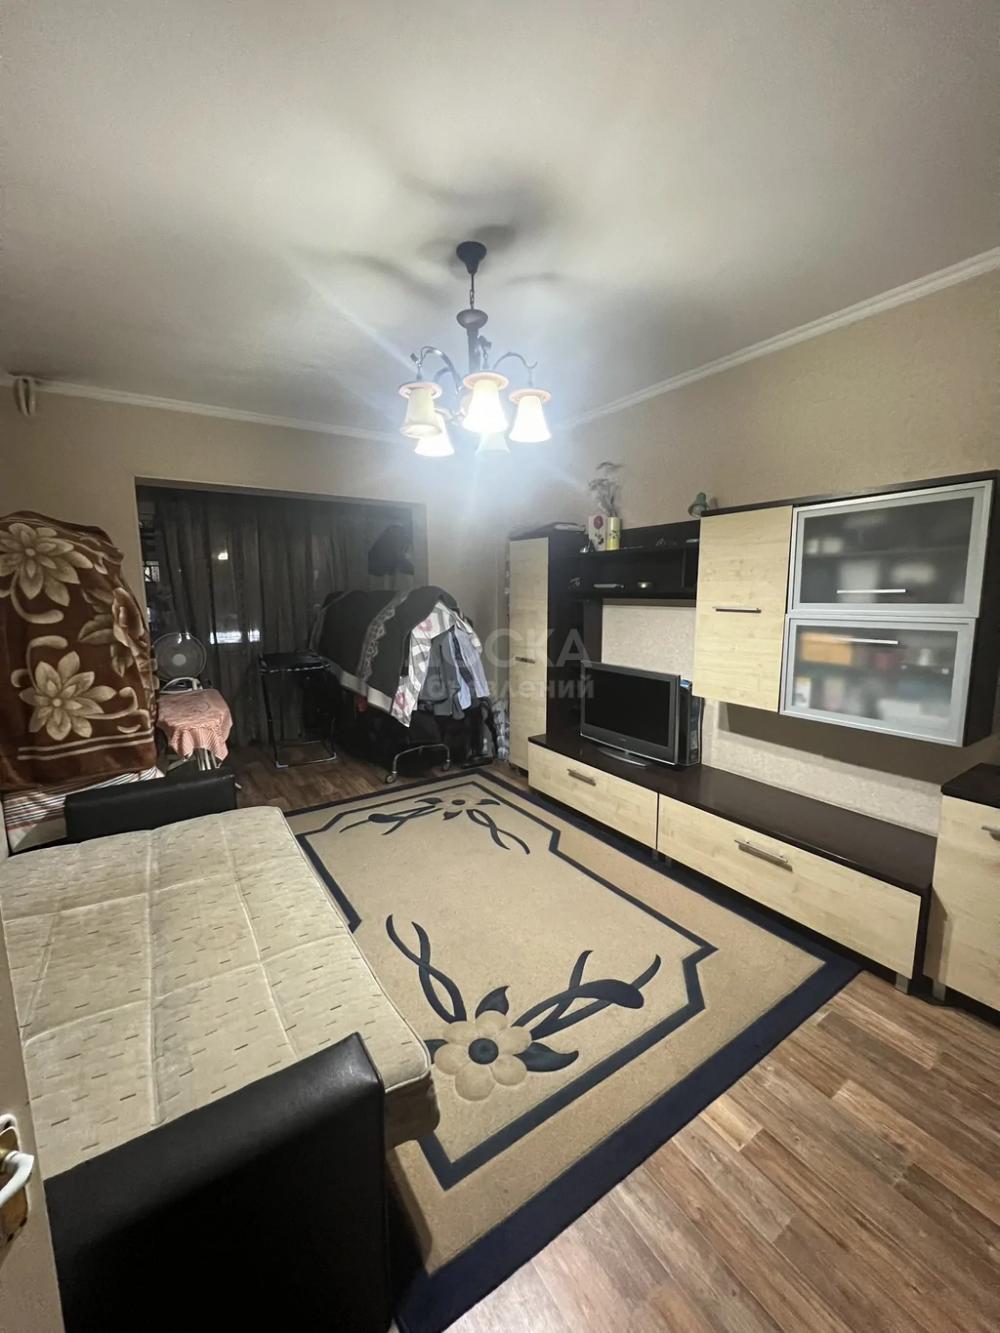 Продаю 2-комнатную квартиру, 57кв. м., этаж - 3/9, в центре Бишкека.